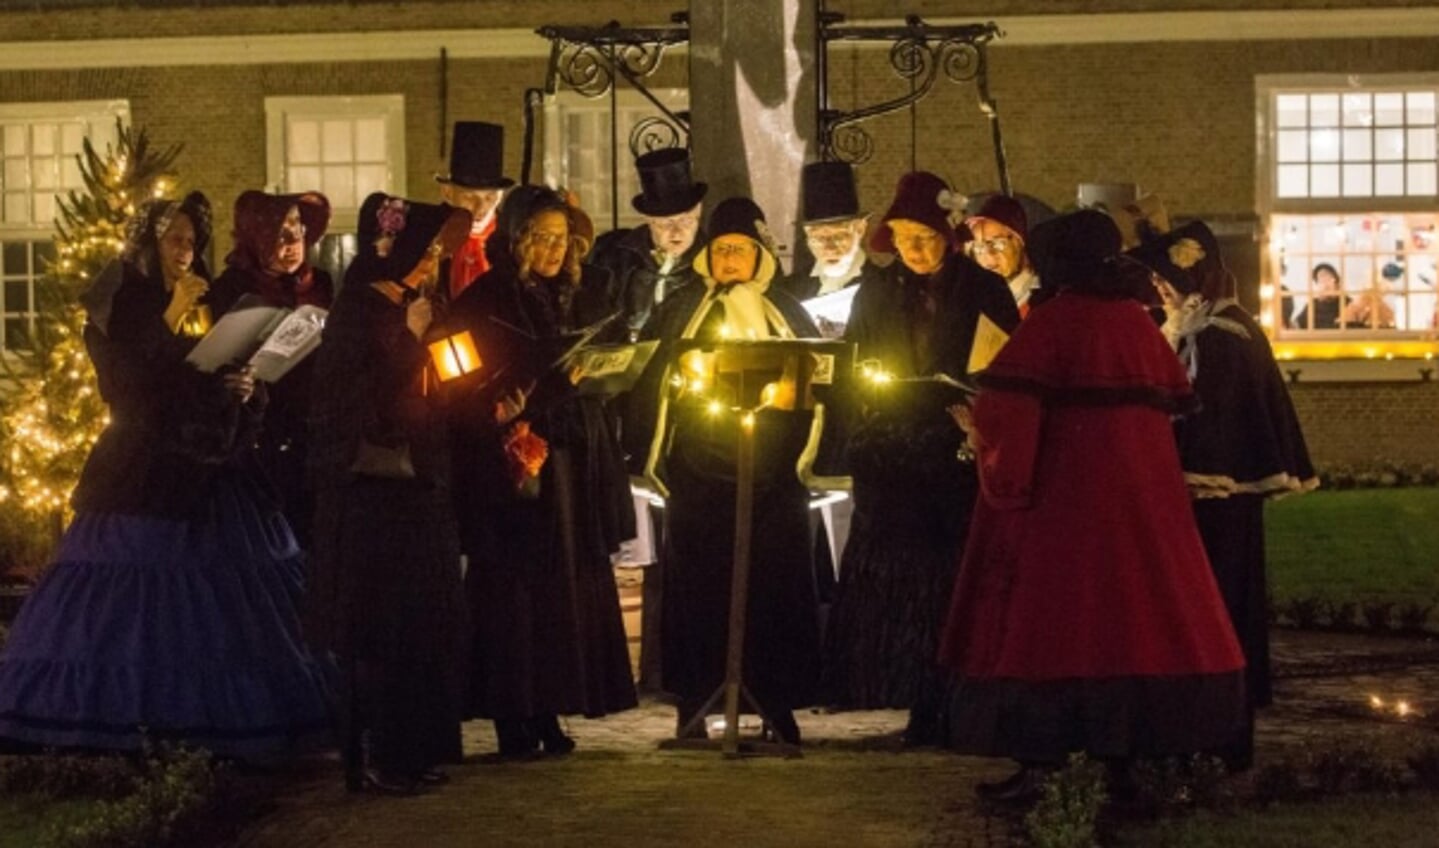 The Merry Singers in 2018 in Dickensstijl. FOTO HANS HUFKENS